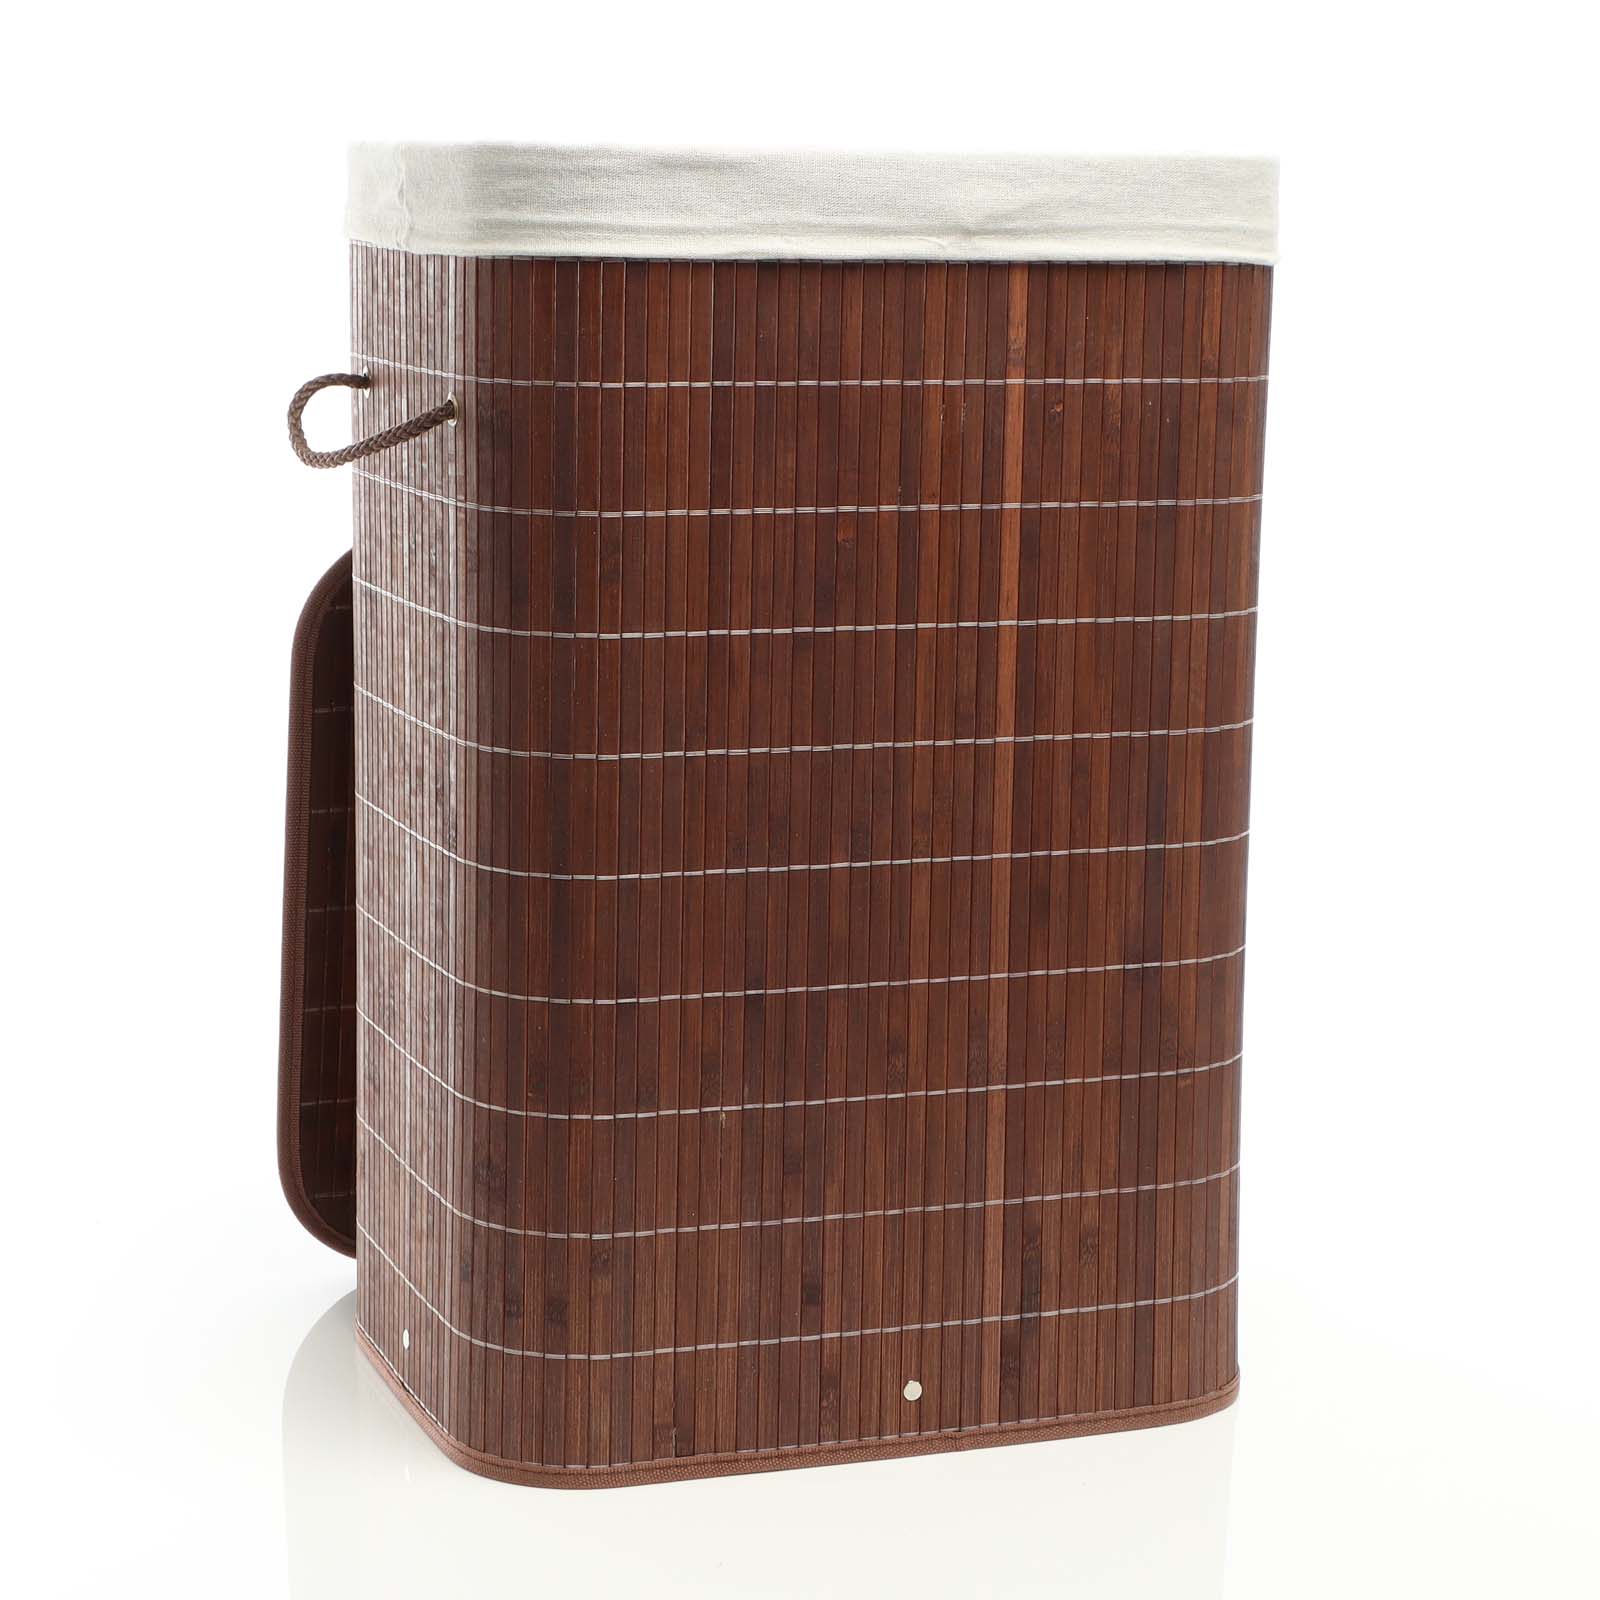 Bambus Wäschesack für Schmutzwäsche - Wäschecontainer Wäschekorb